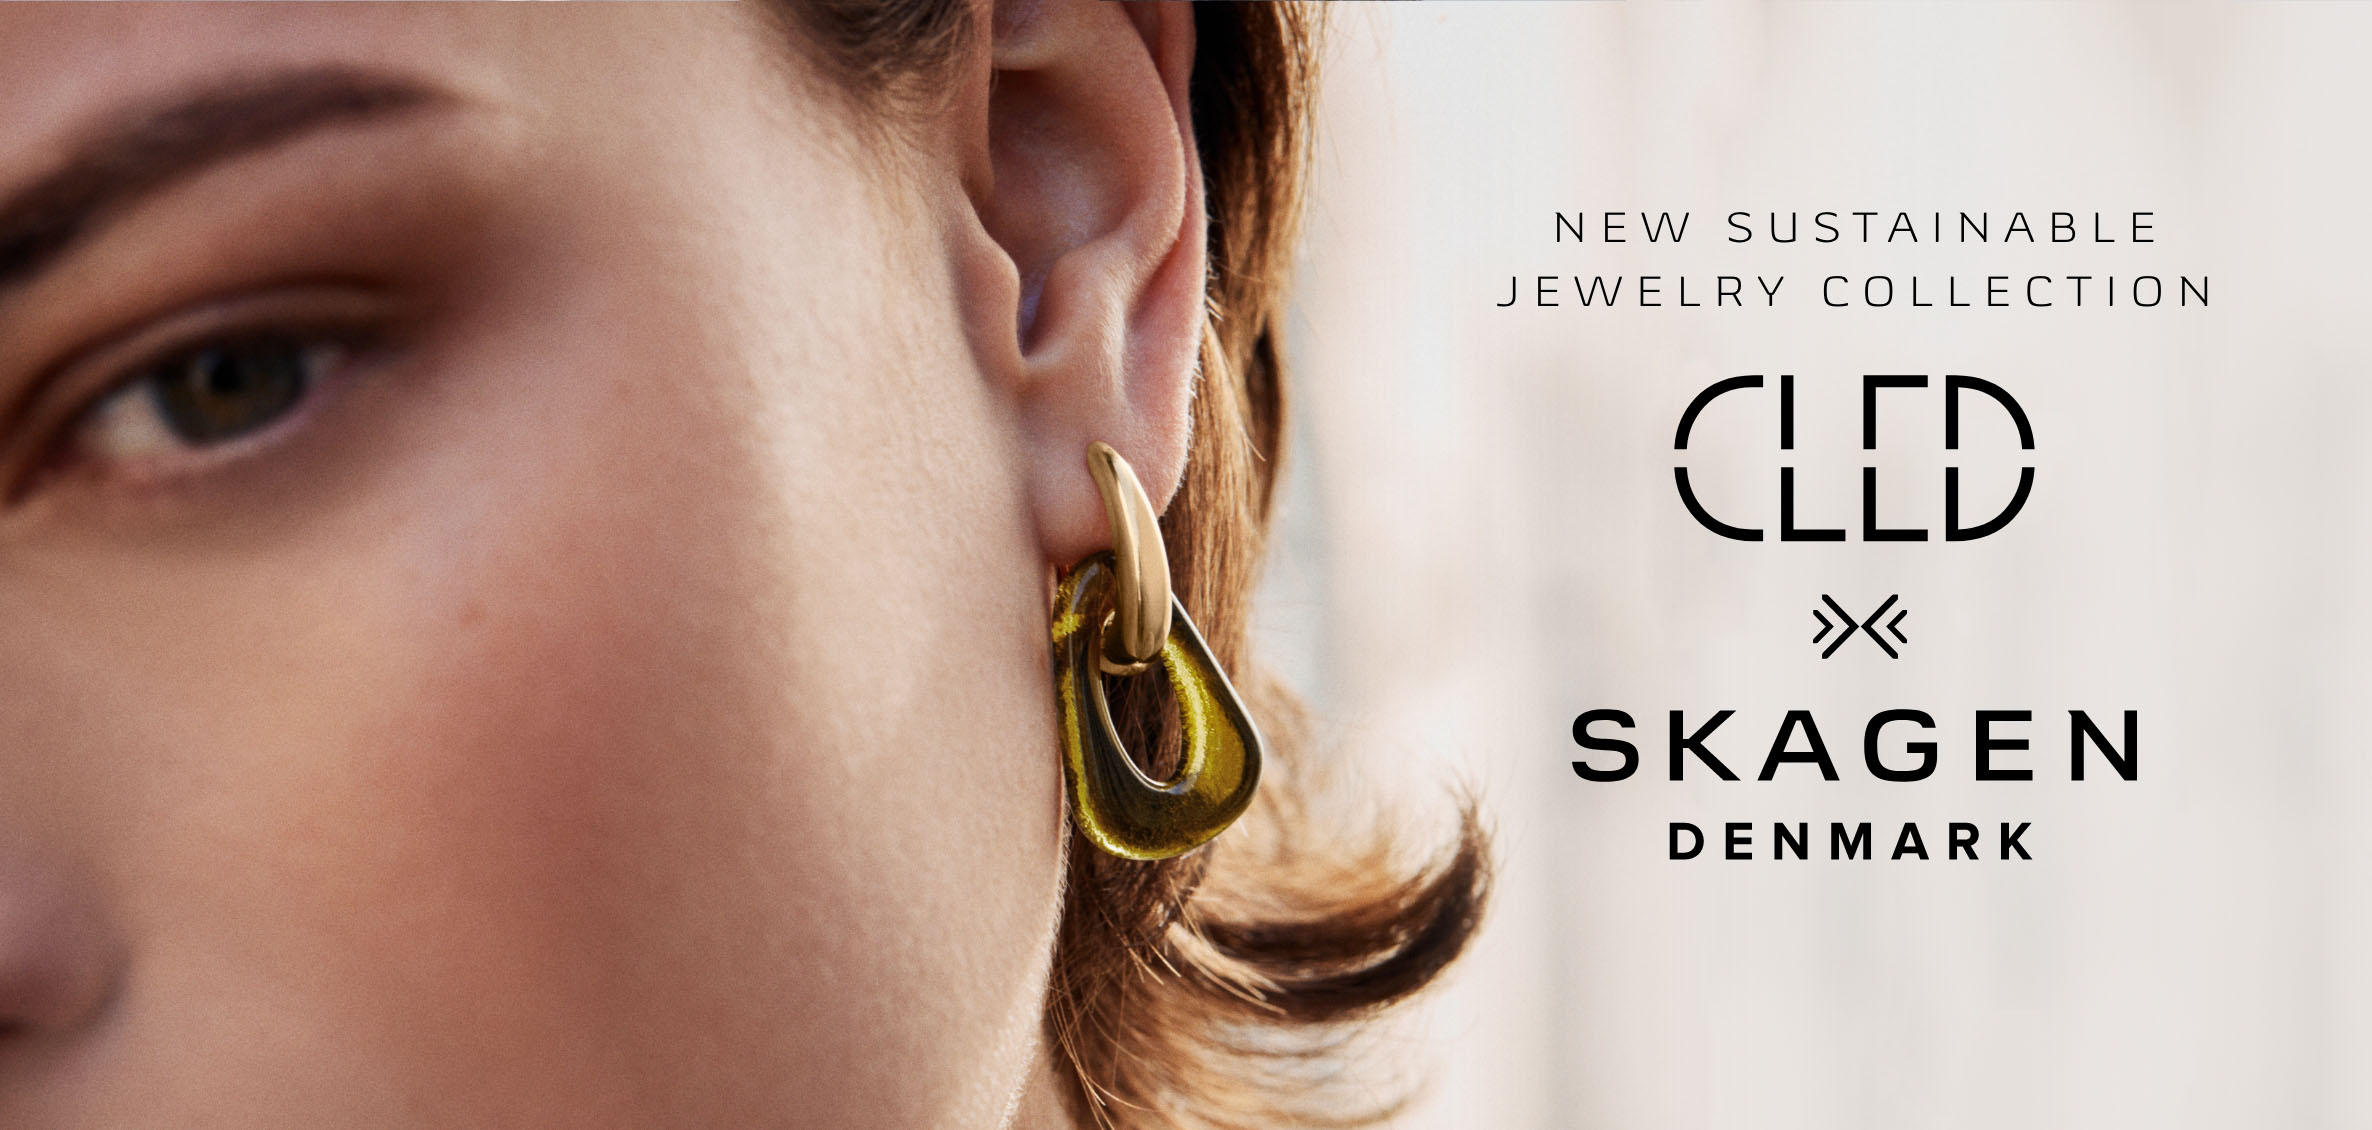 CLED x Skagen Header Image of a woman wearing earrings